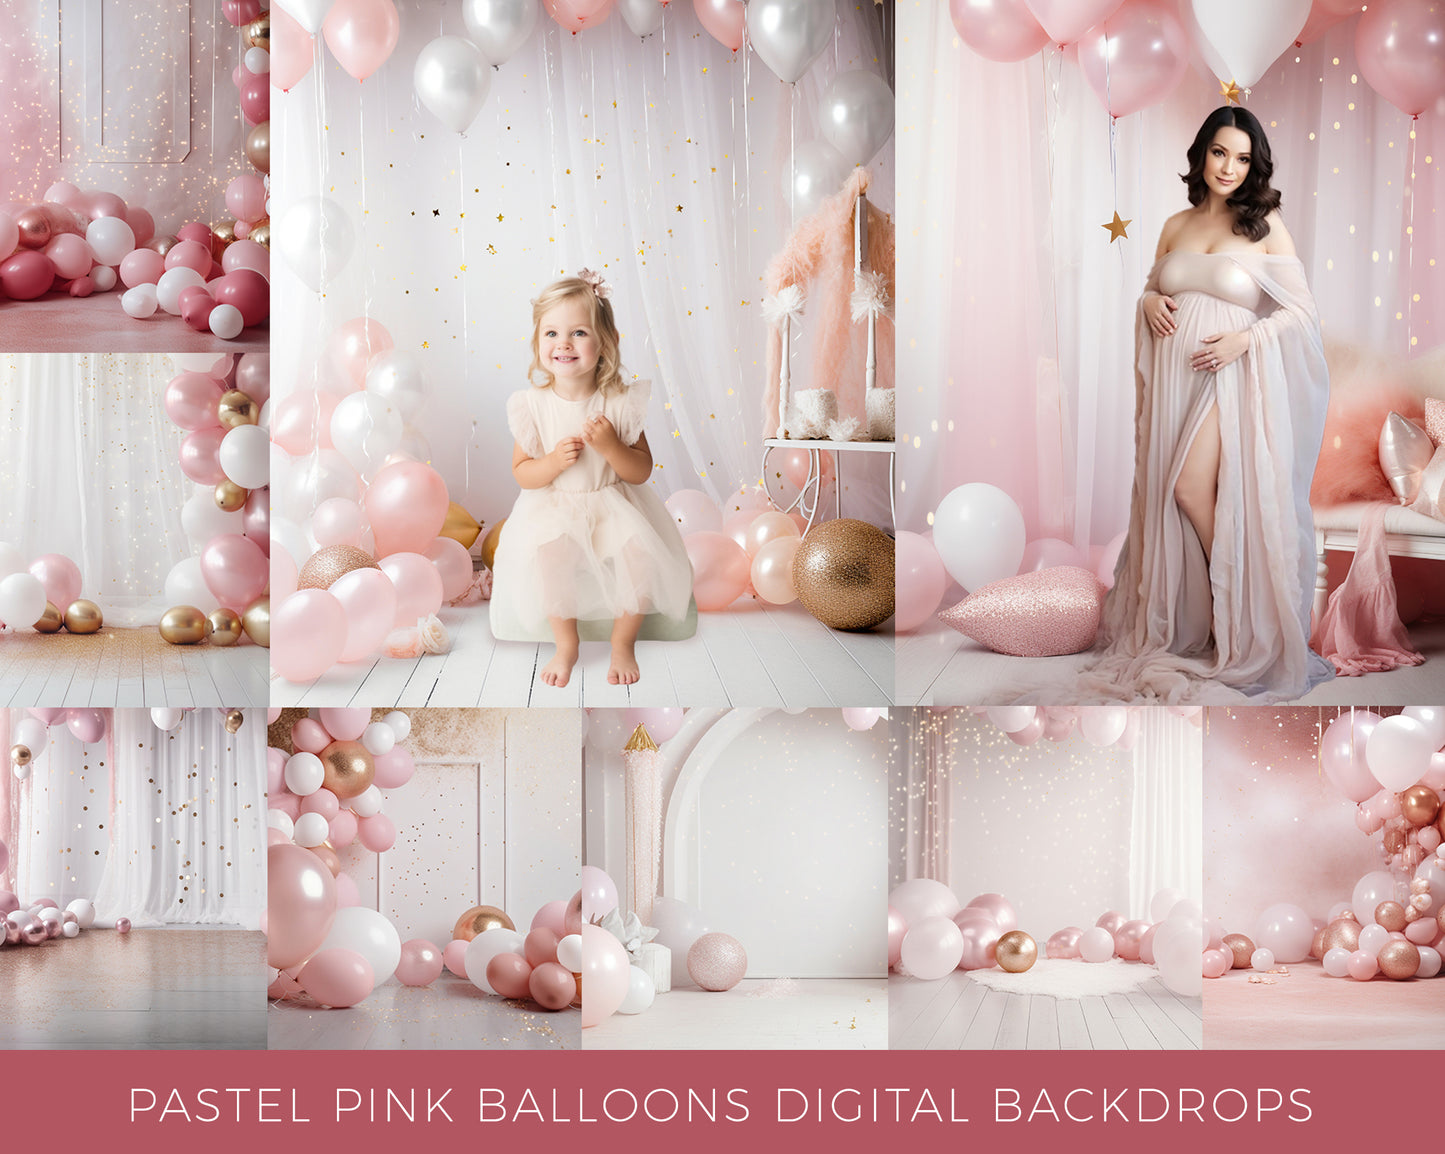 10 Pastel Pink Balloons Digital Backdrops